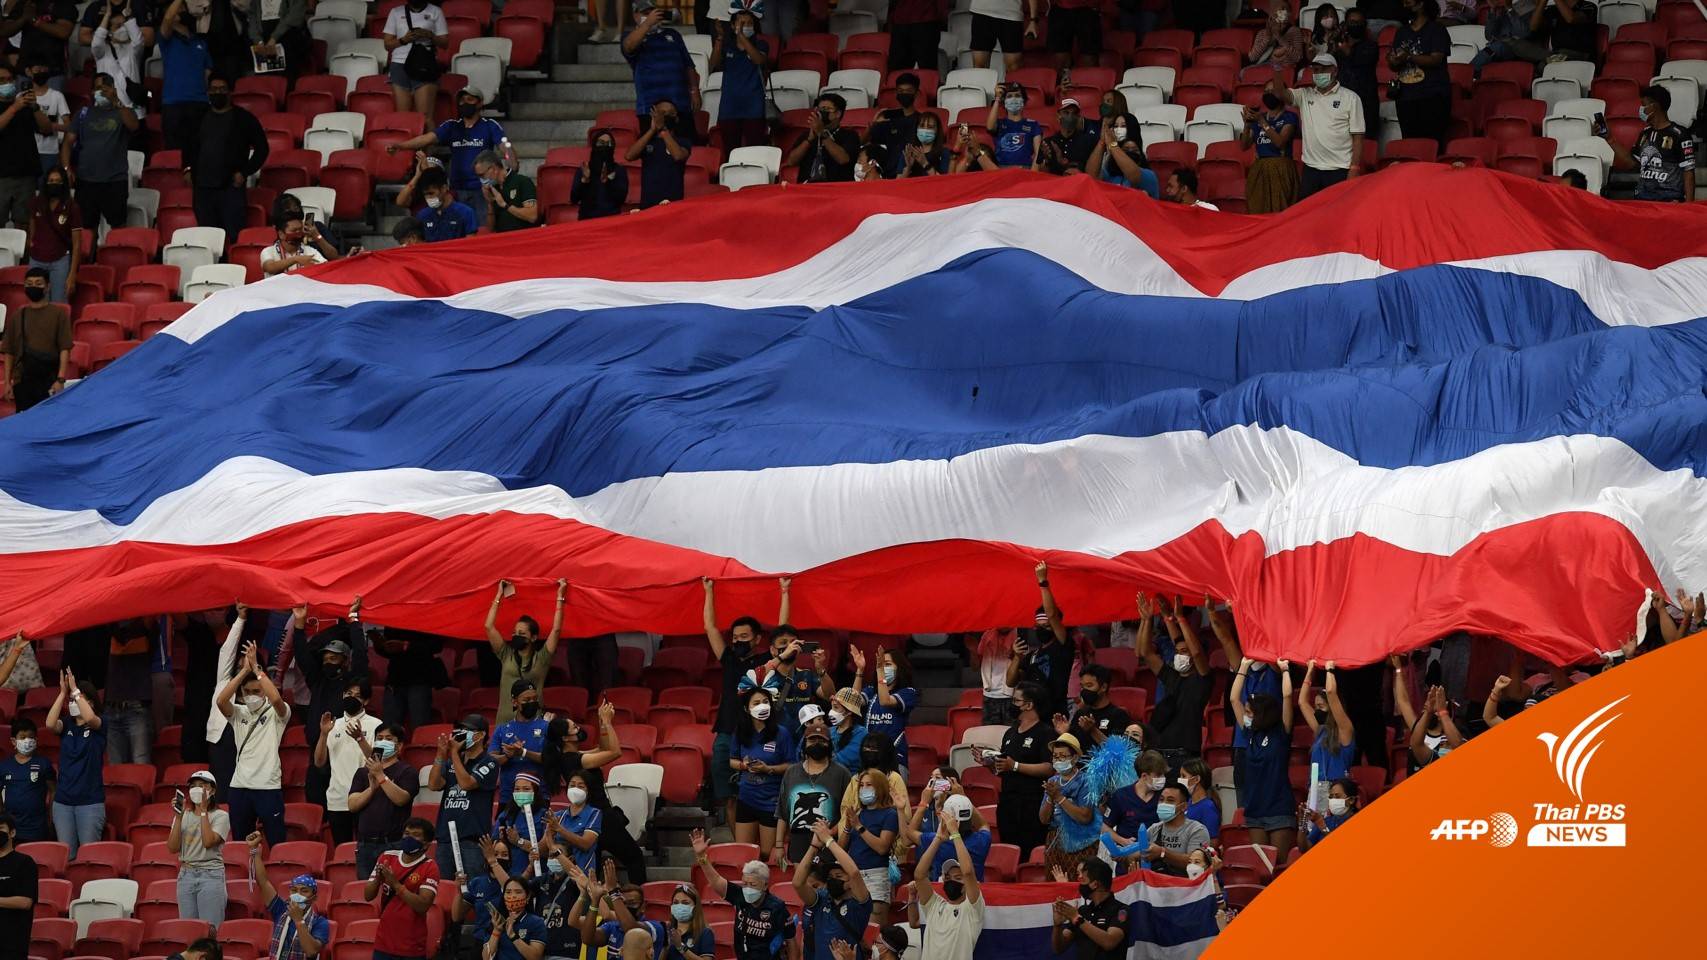 ทีมชาติไทยชุดซีเกมส์ ยังเจอปัญหาโปรแกรมลีกทับซ้อน 